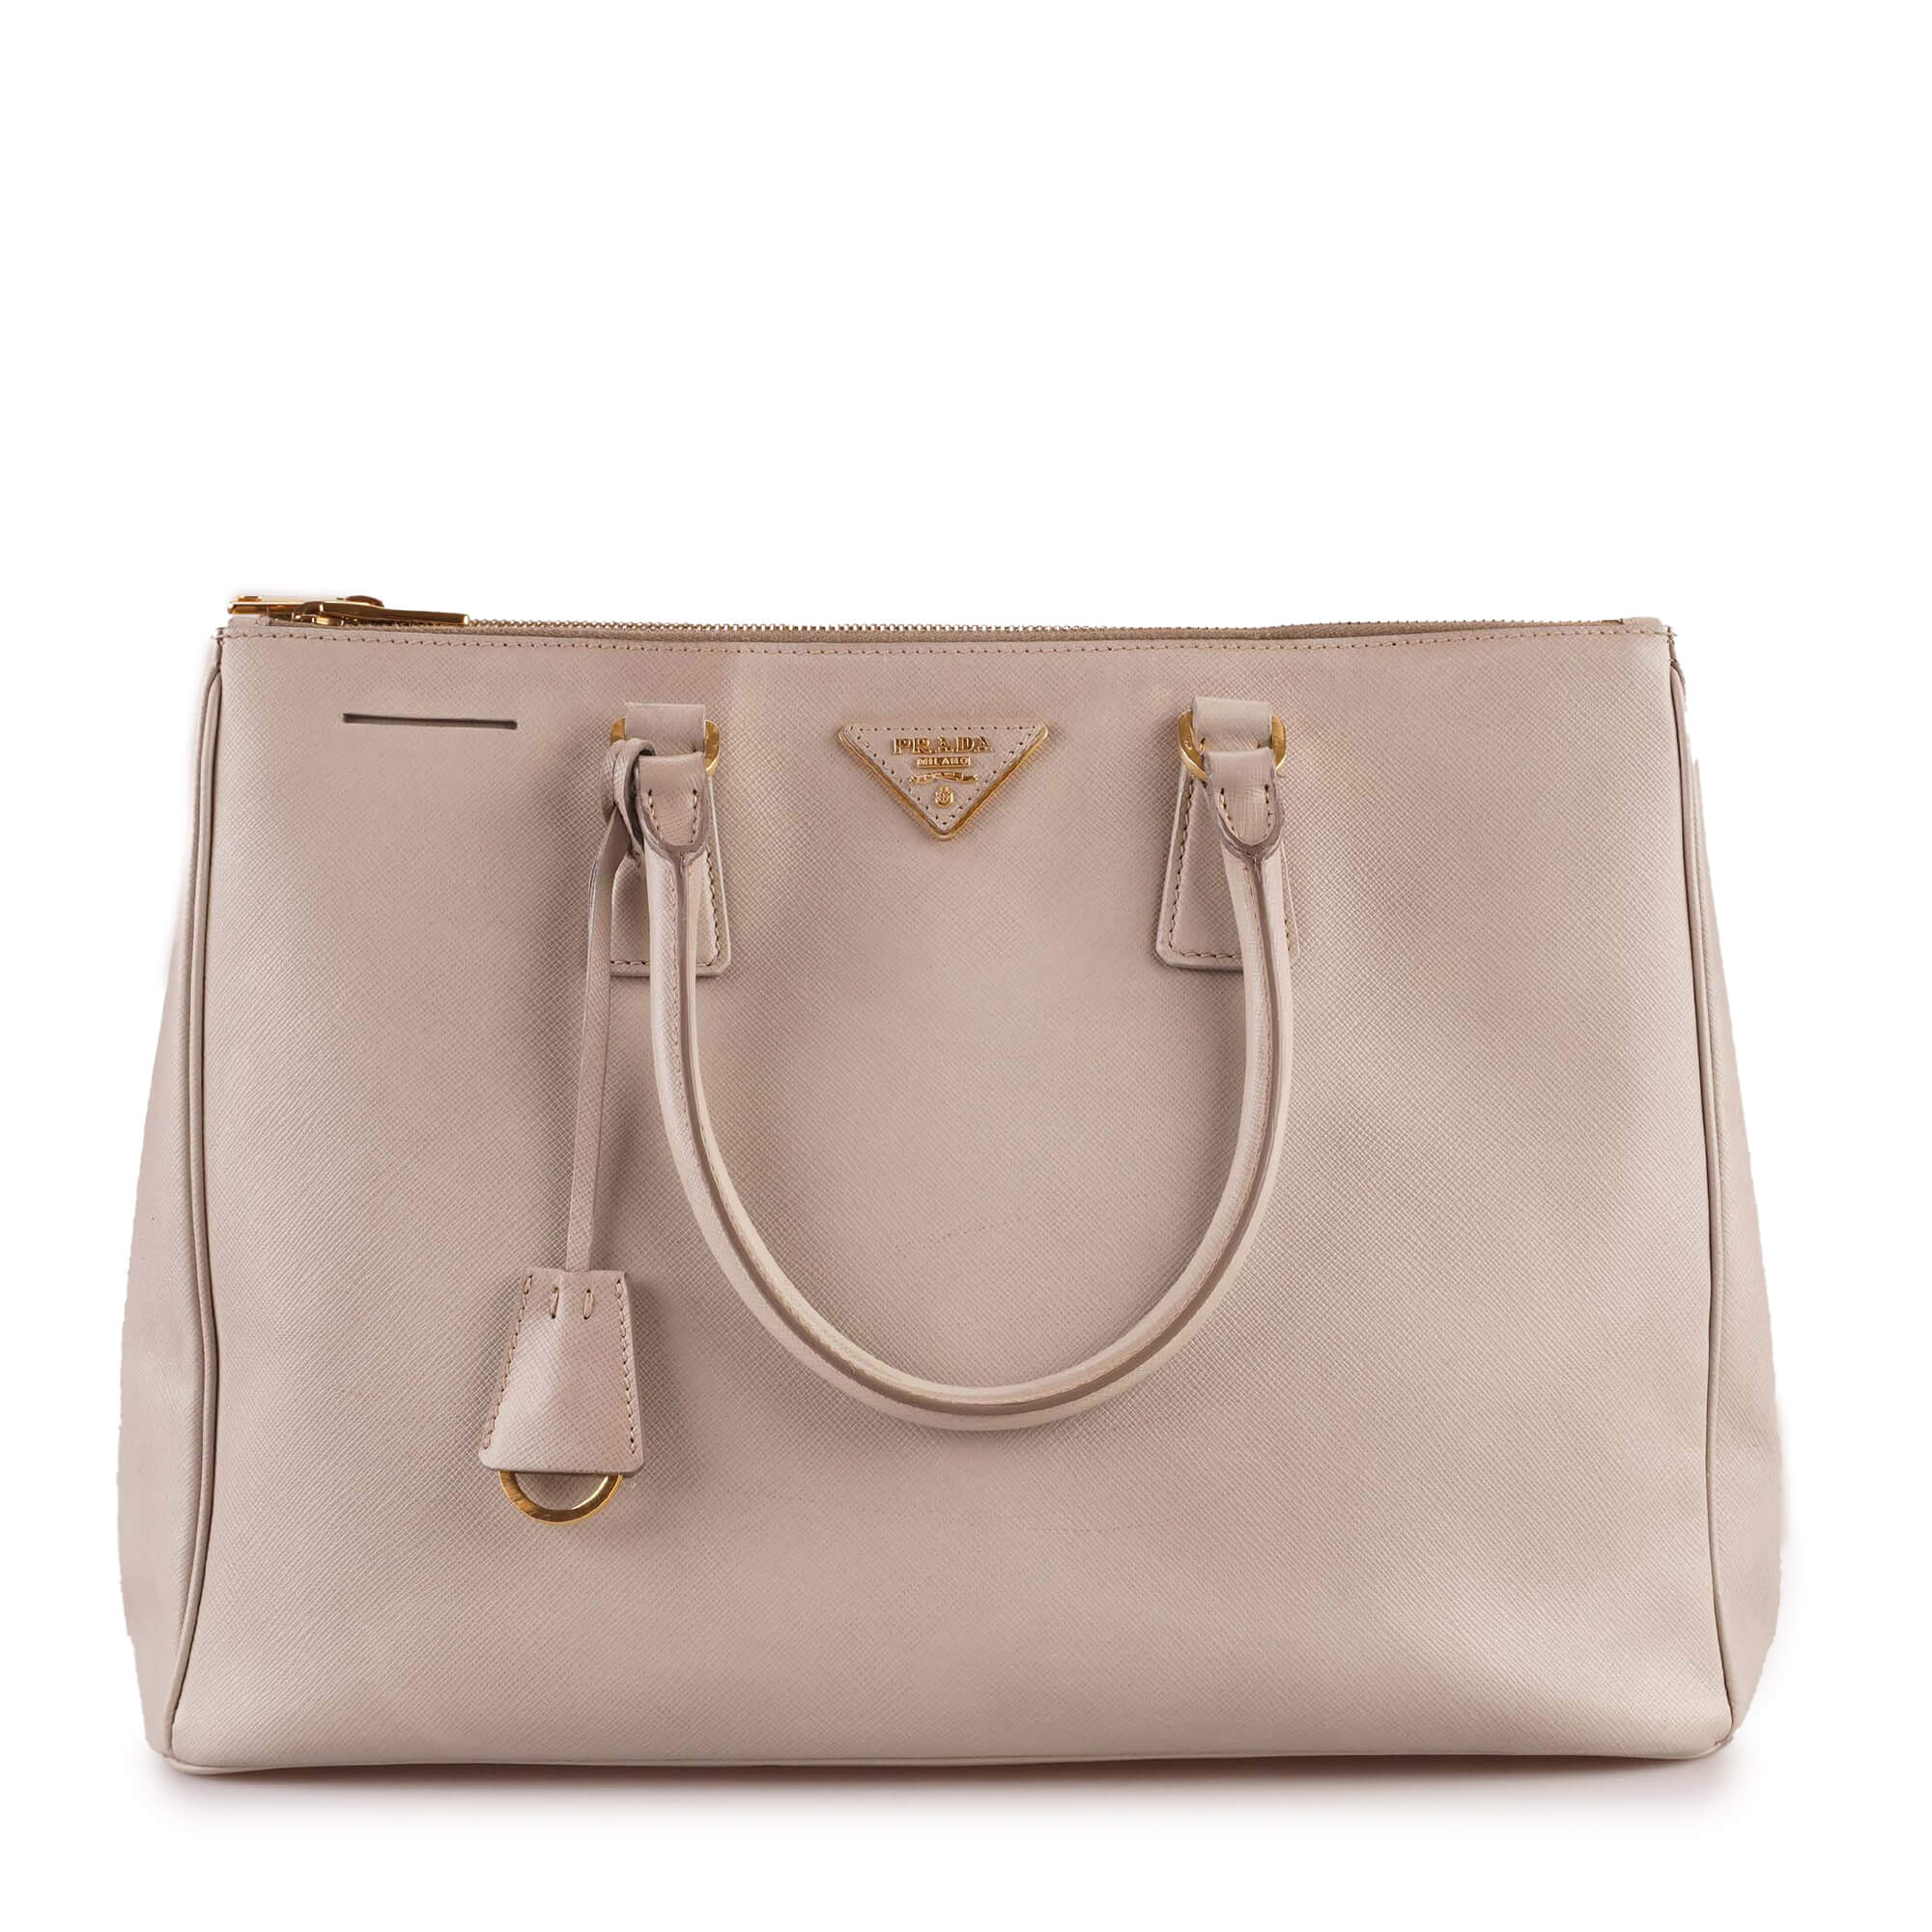 Prada - Stone Saffiano Leather Medium Galleria Bag 